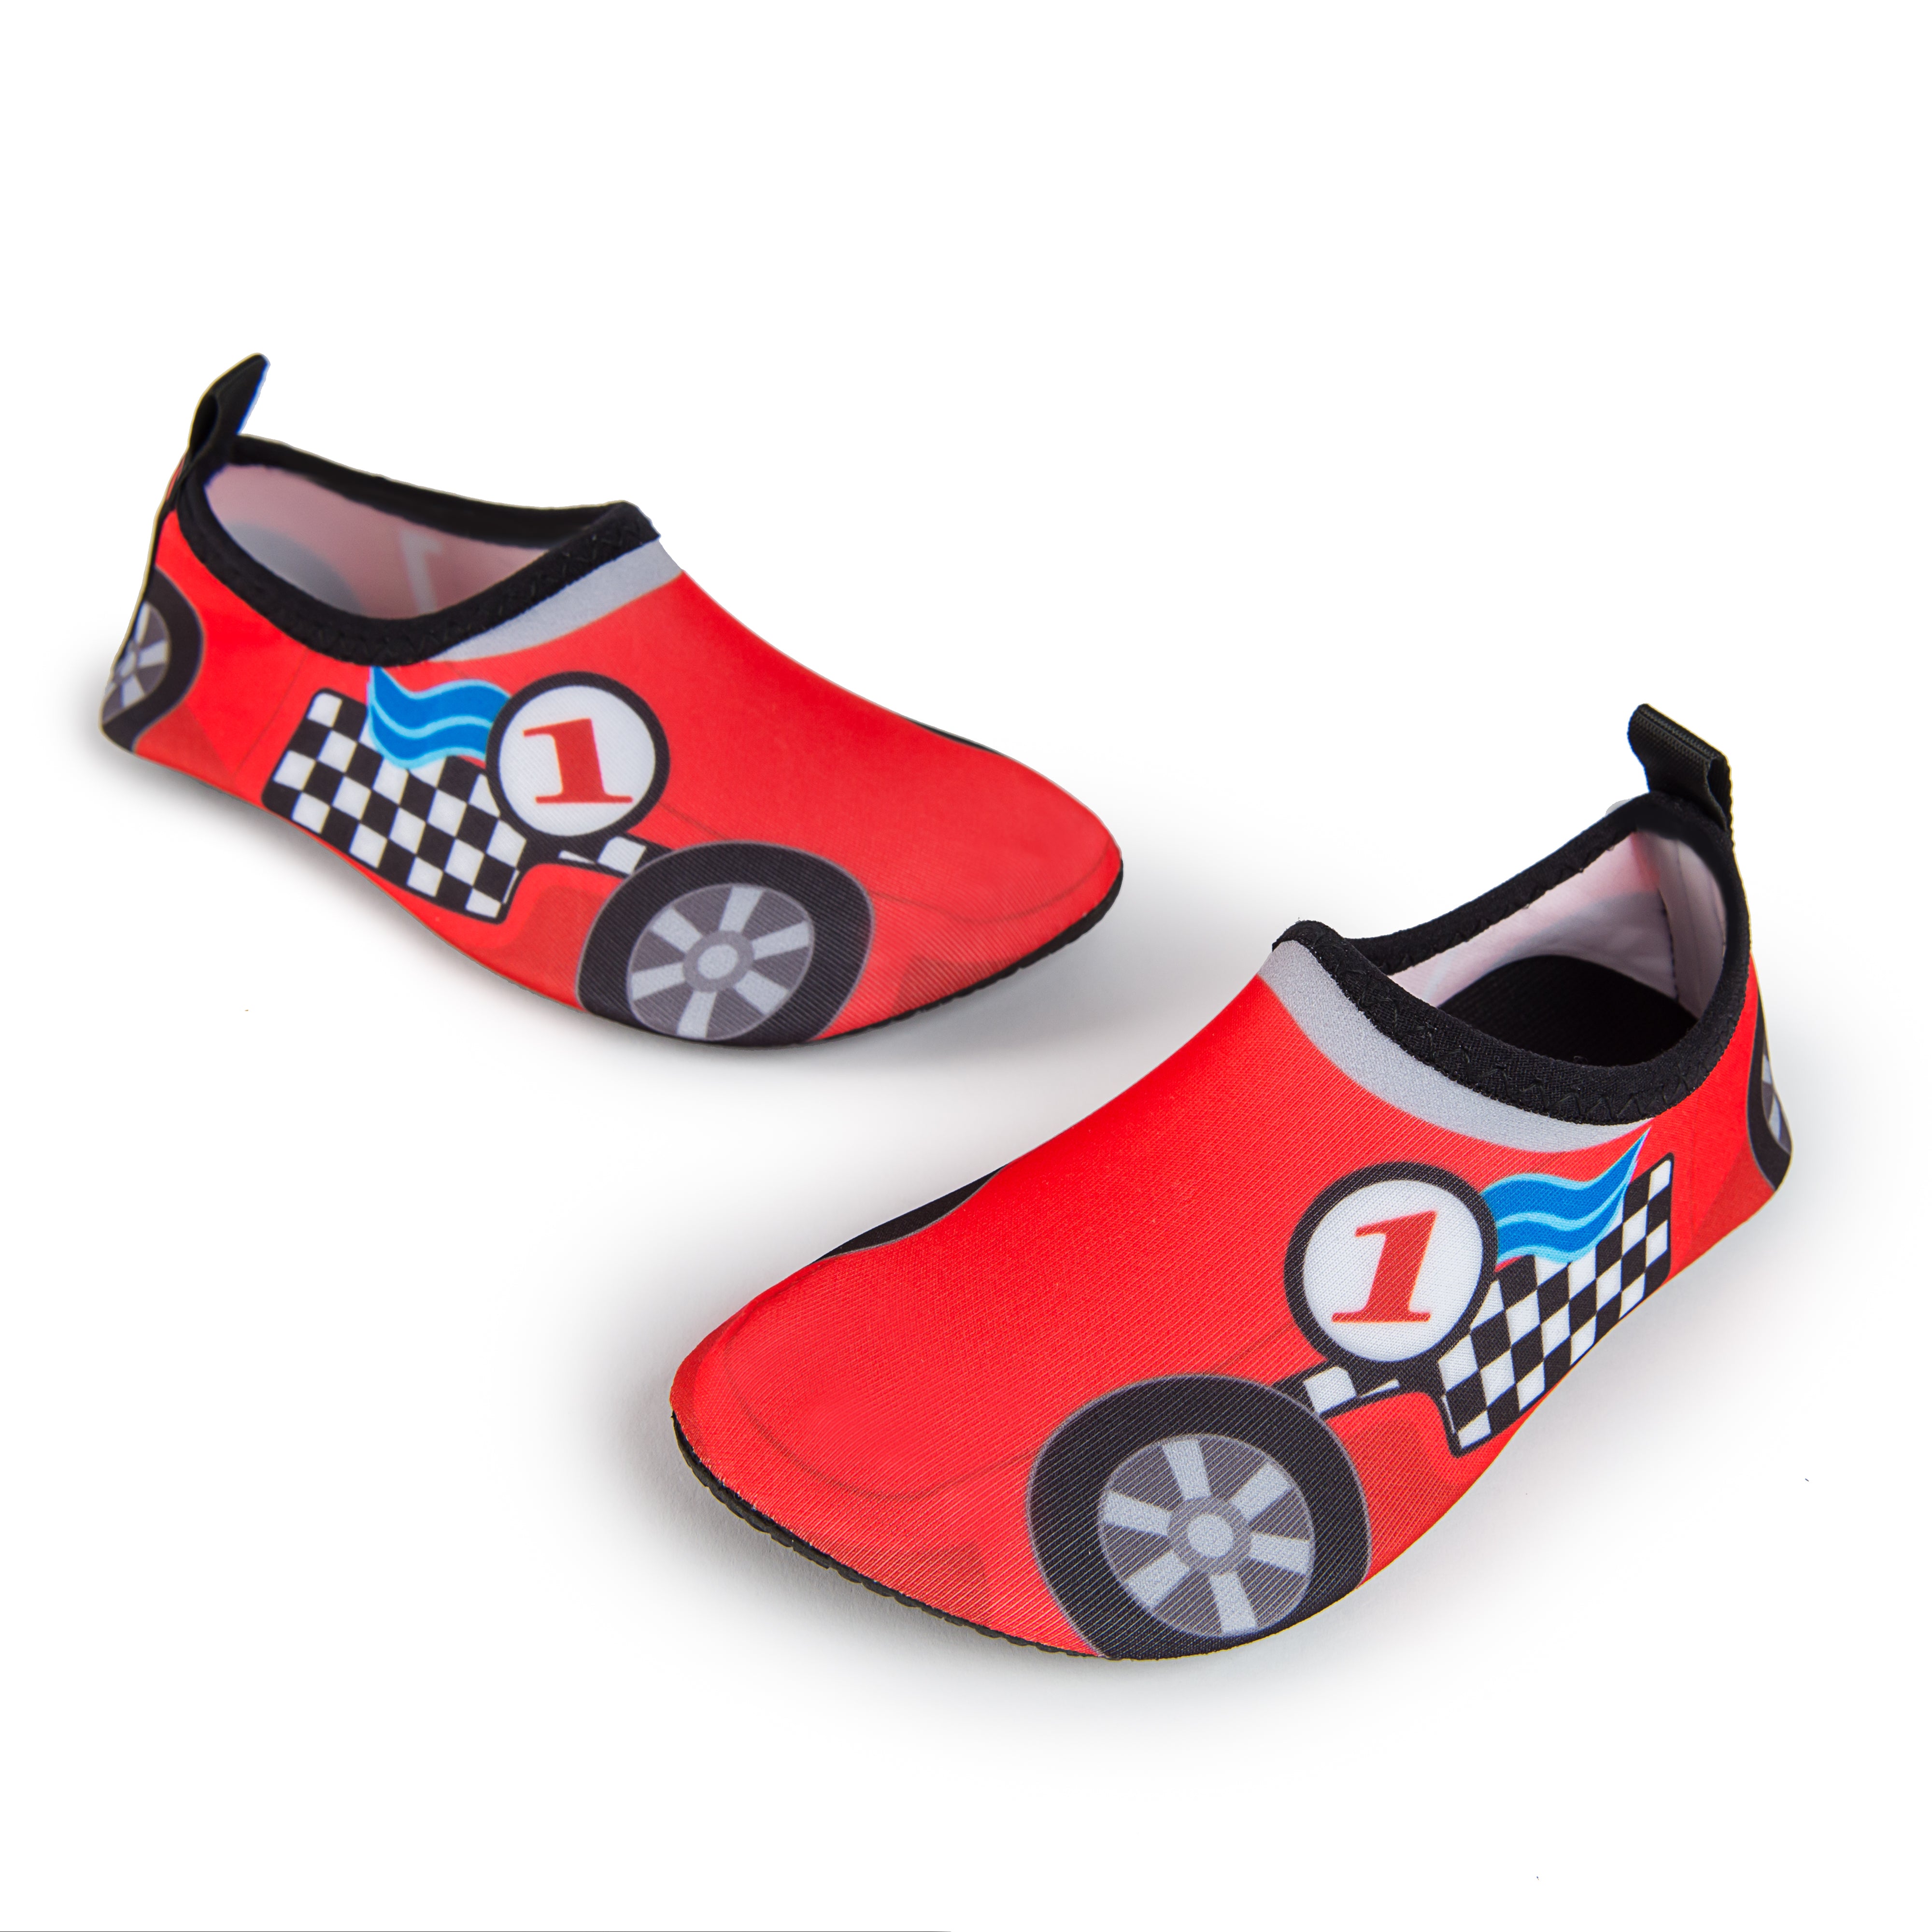 Aqua Sock Shoes Race Car Style